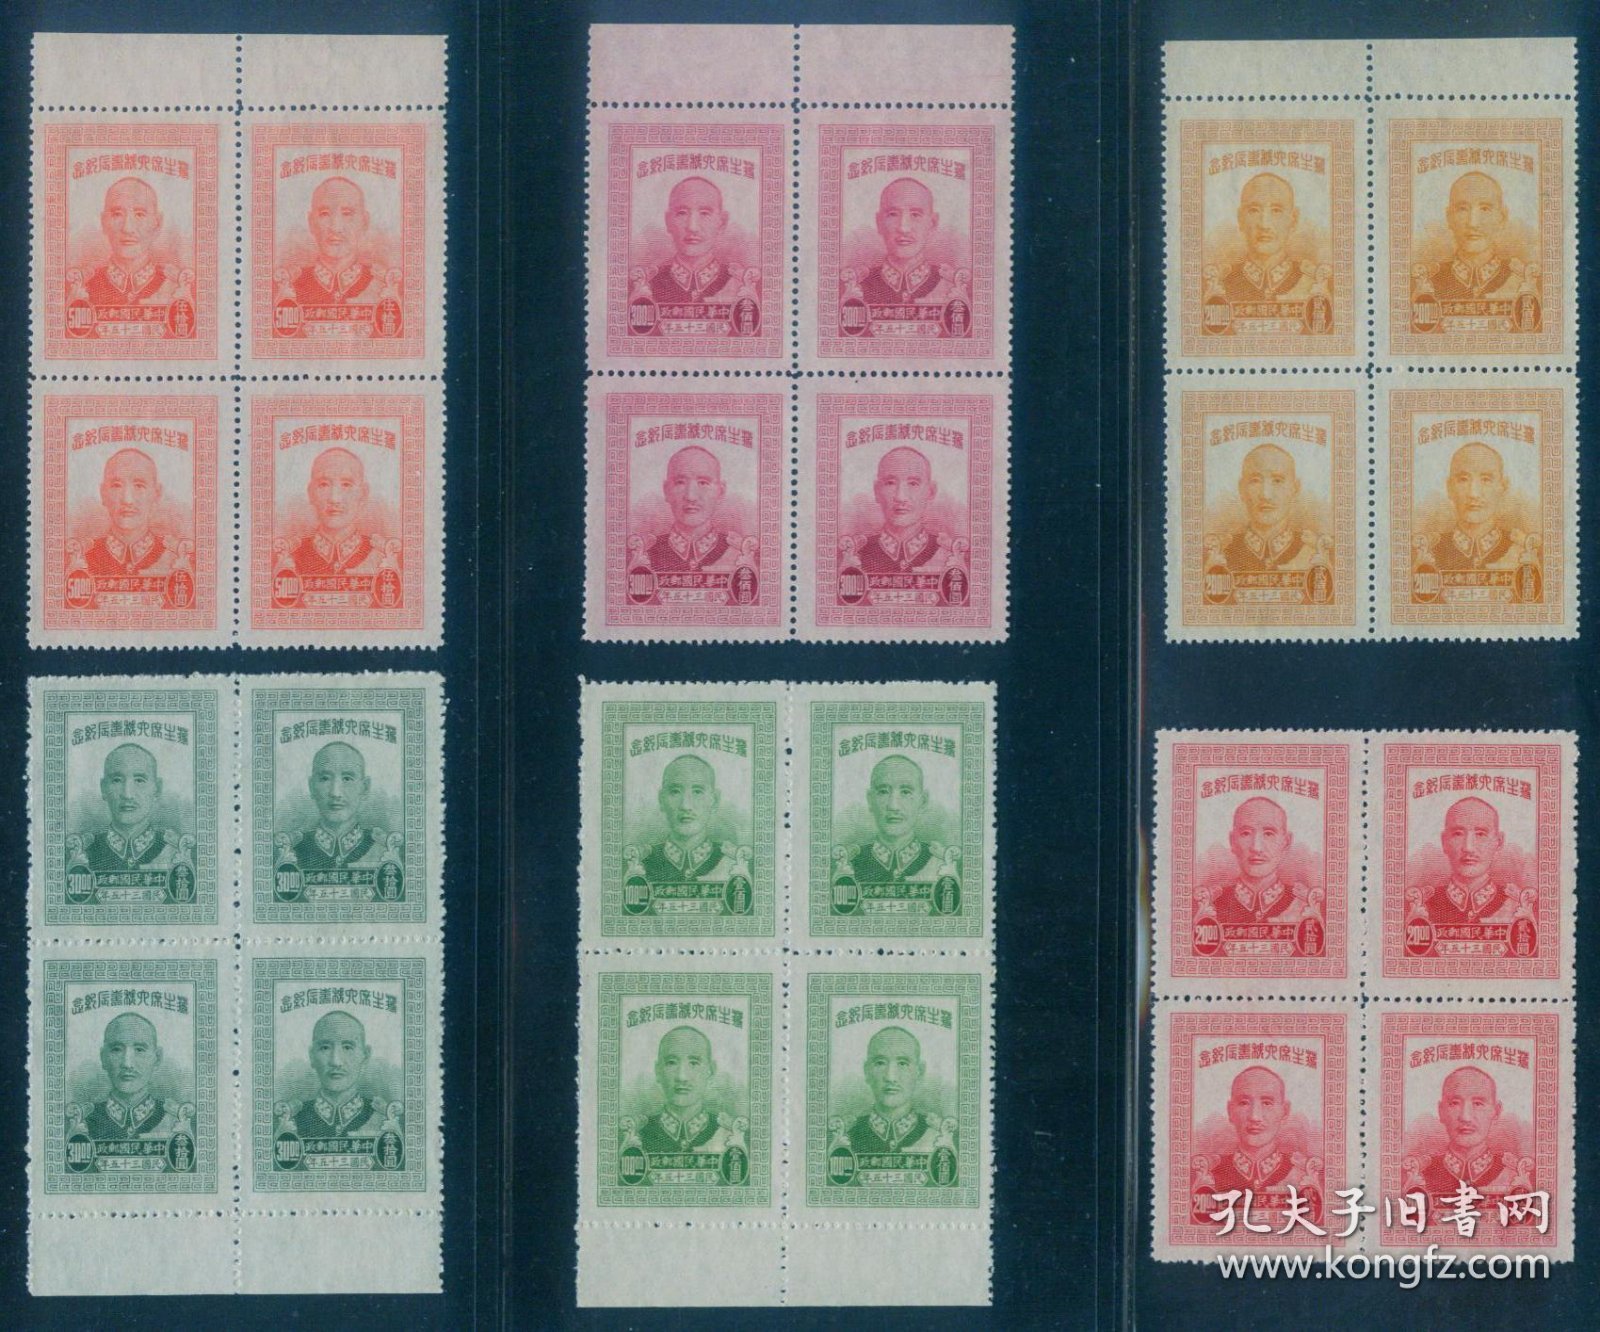 1946年10月13日发行 民国纪念邮票 民纪20 六秩寿辰(细齿)6全新四方连 全品